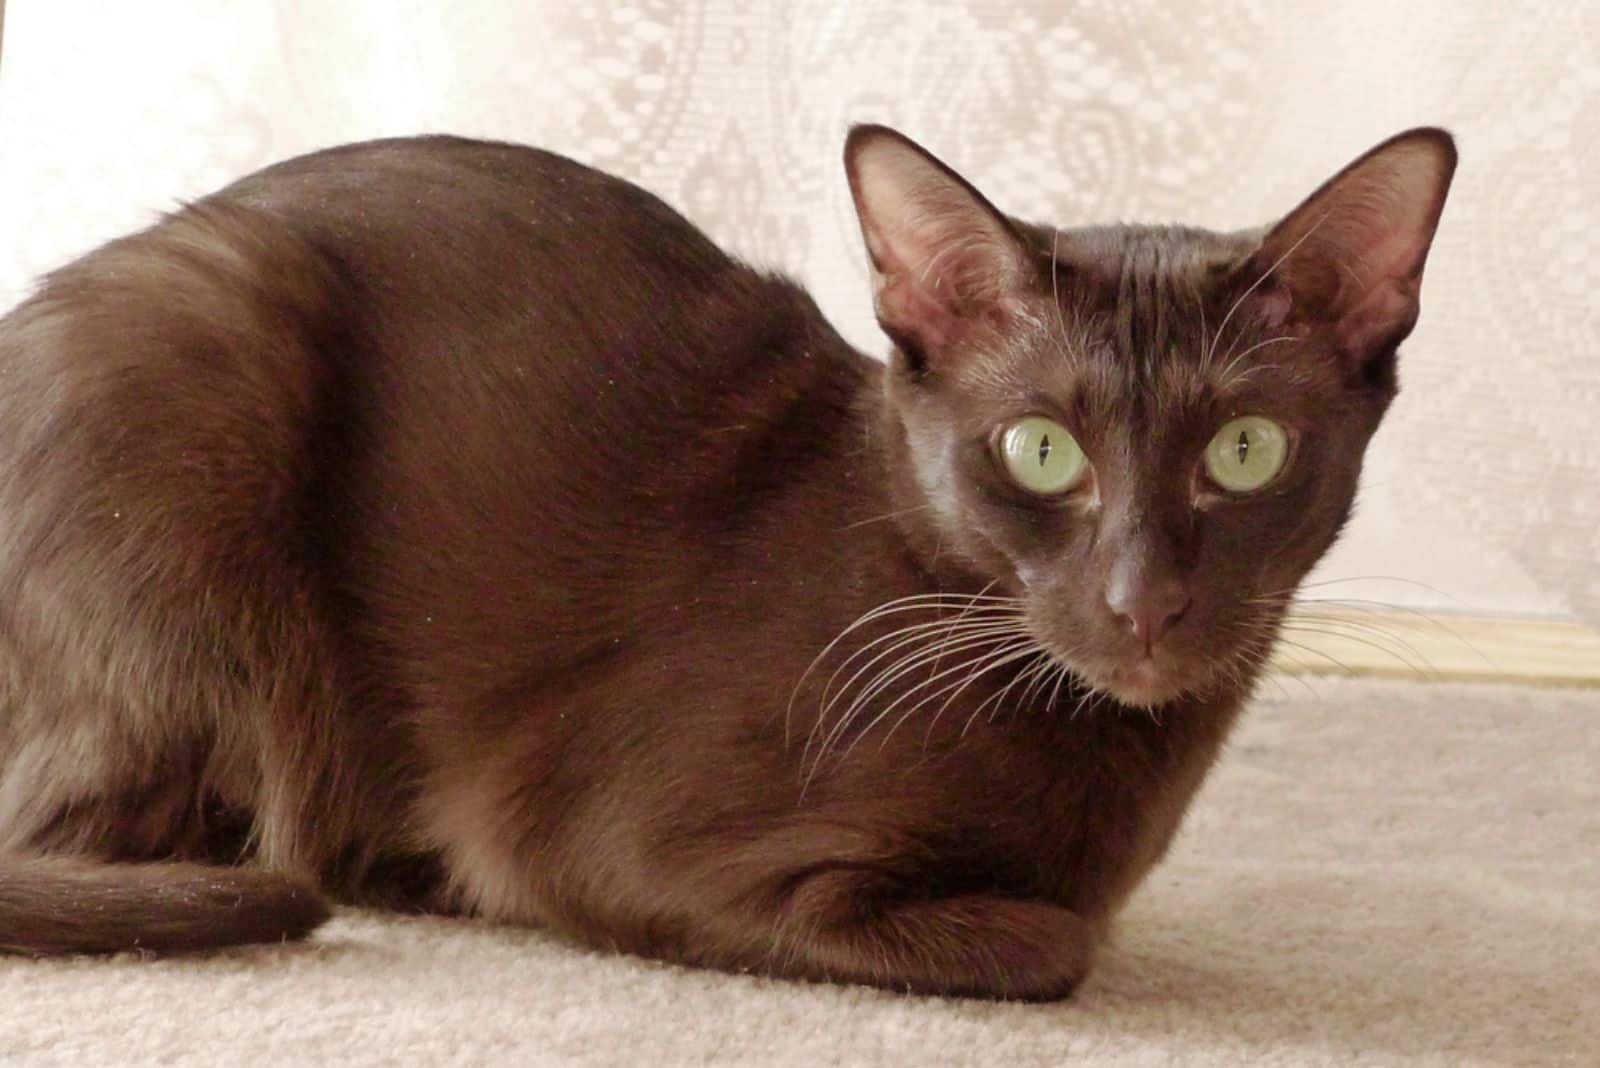 Havana brown cat on beige carpet